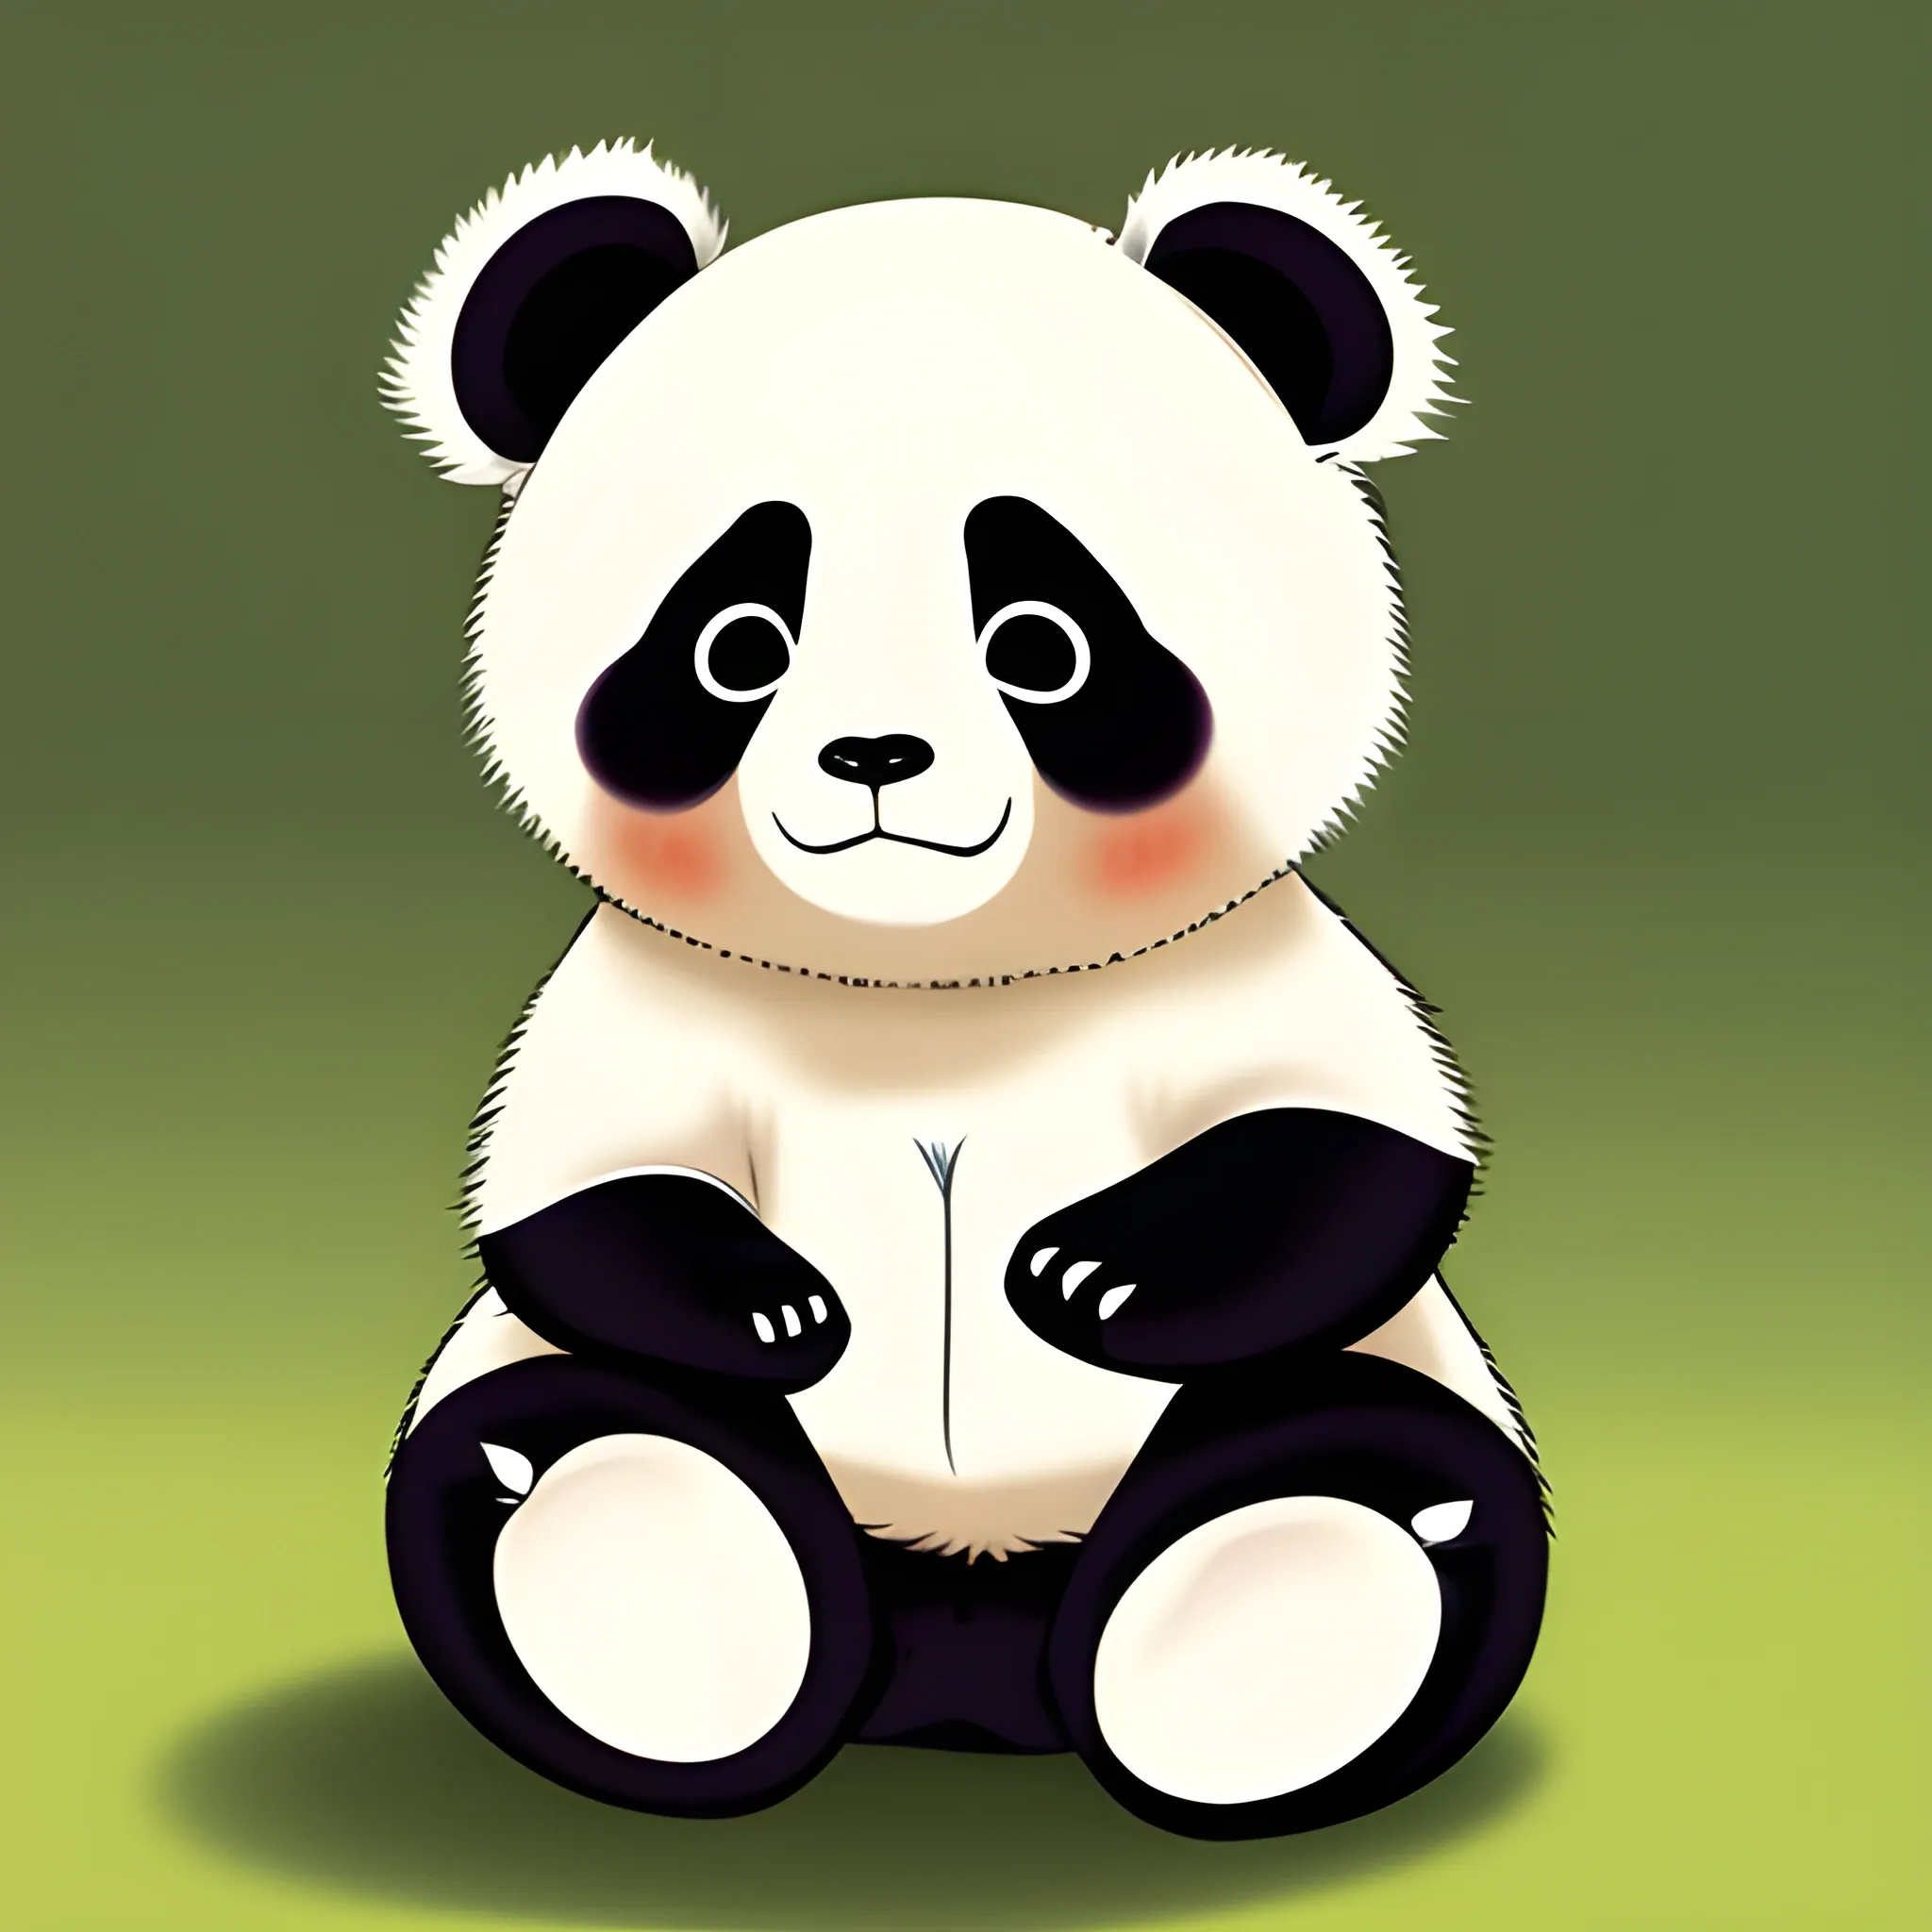 🔥 [47+] Cute Anime Panda Wallpaper | WallpaperSafari